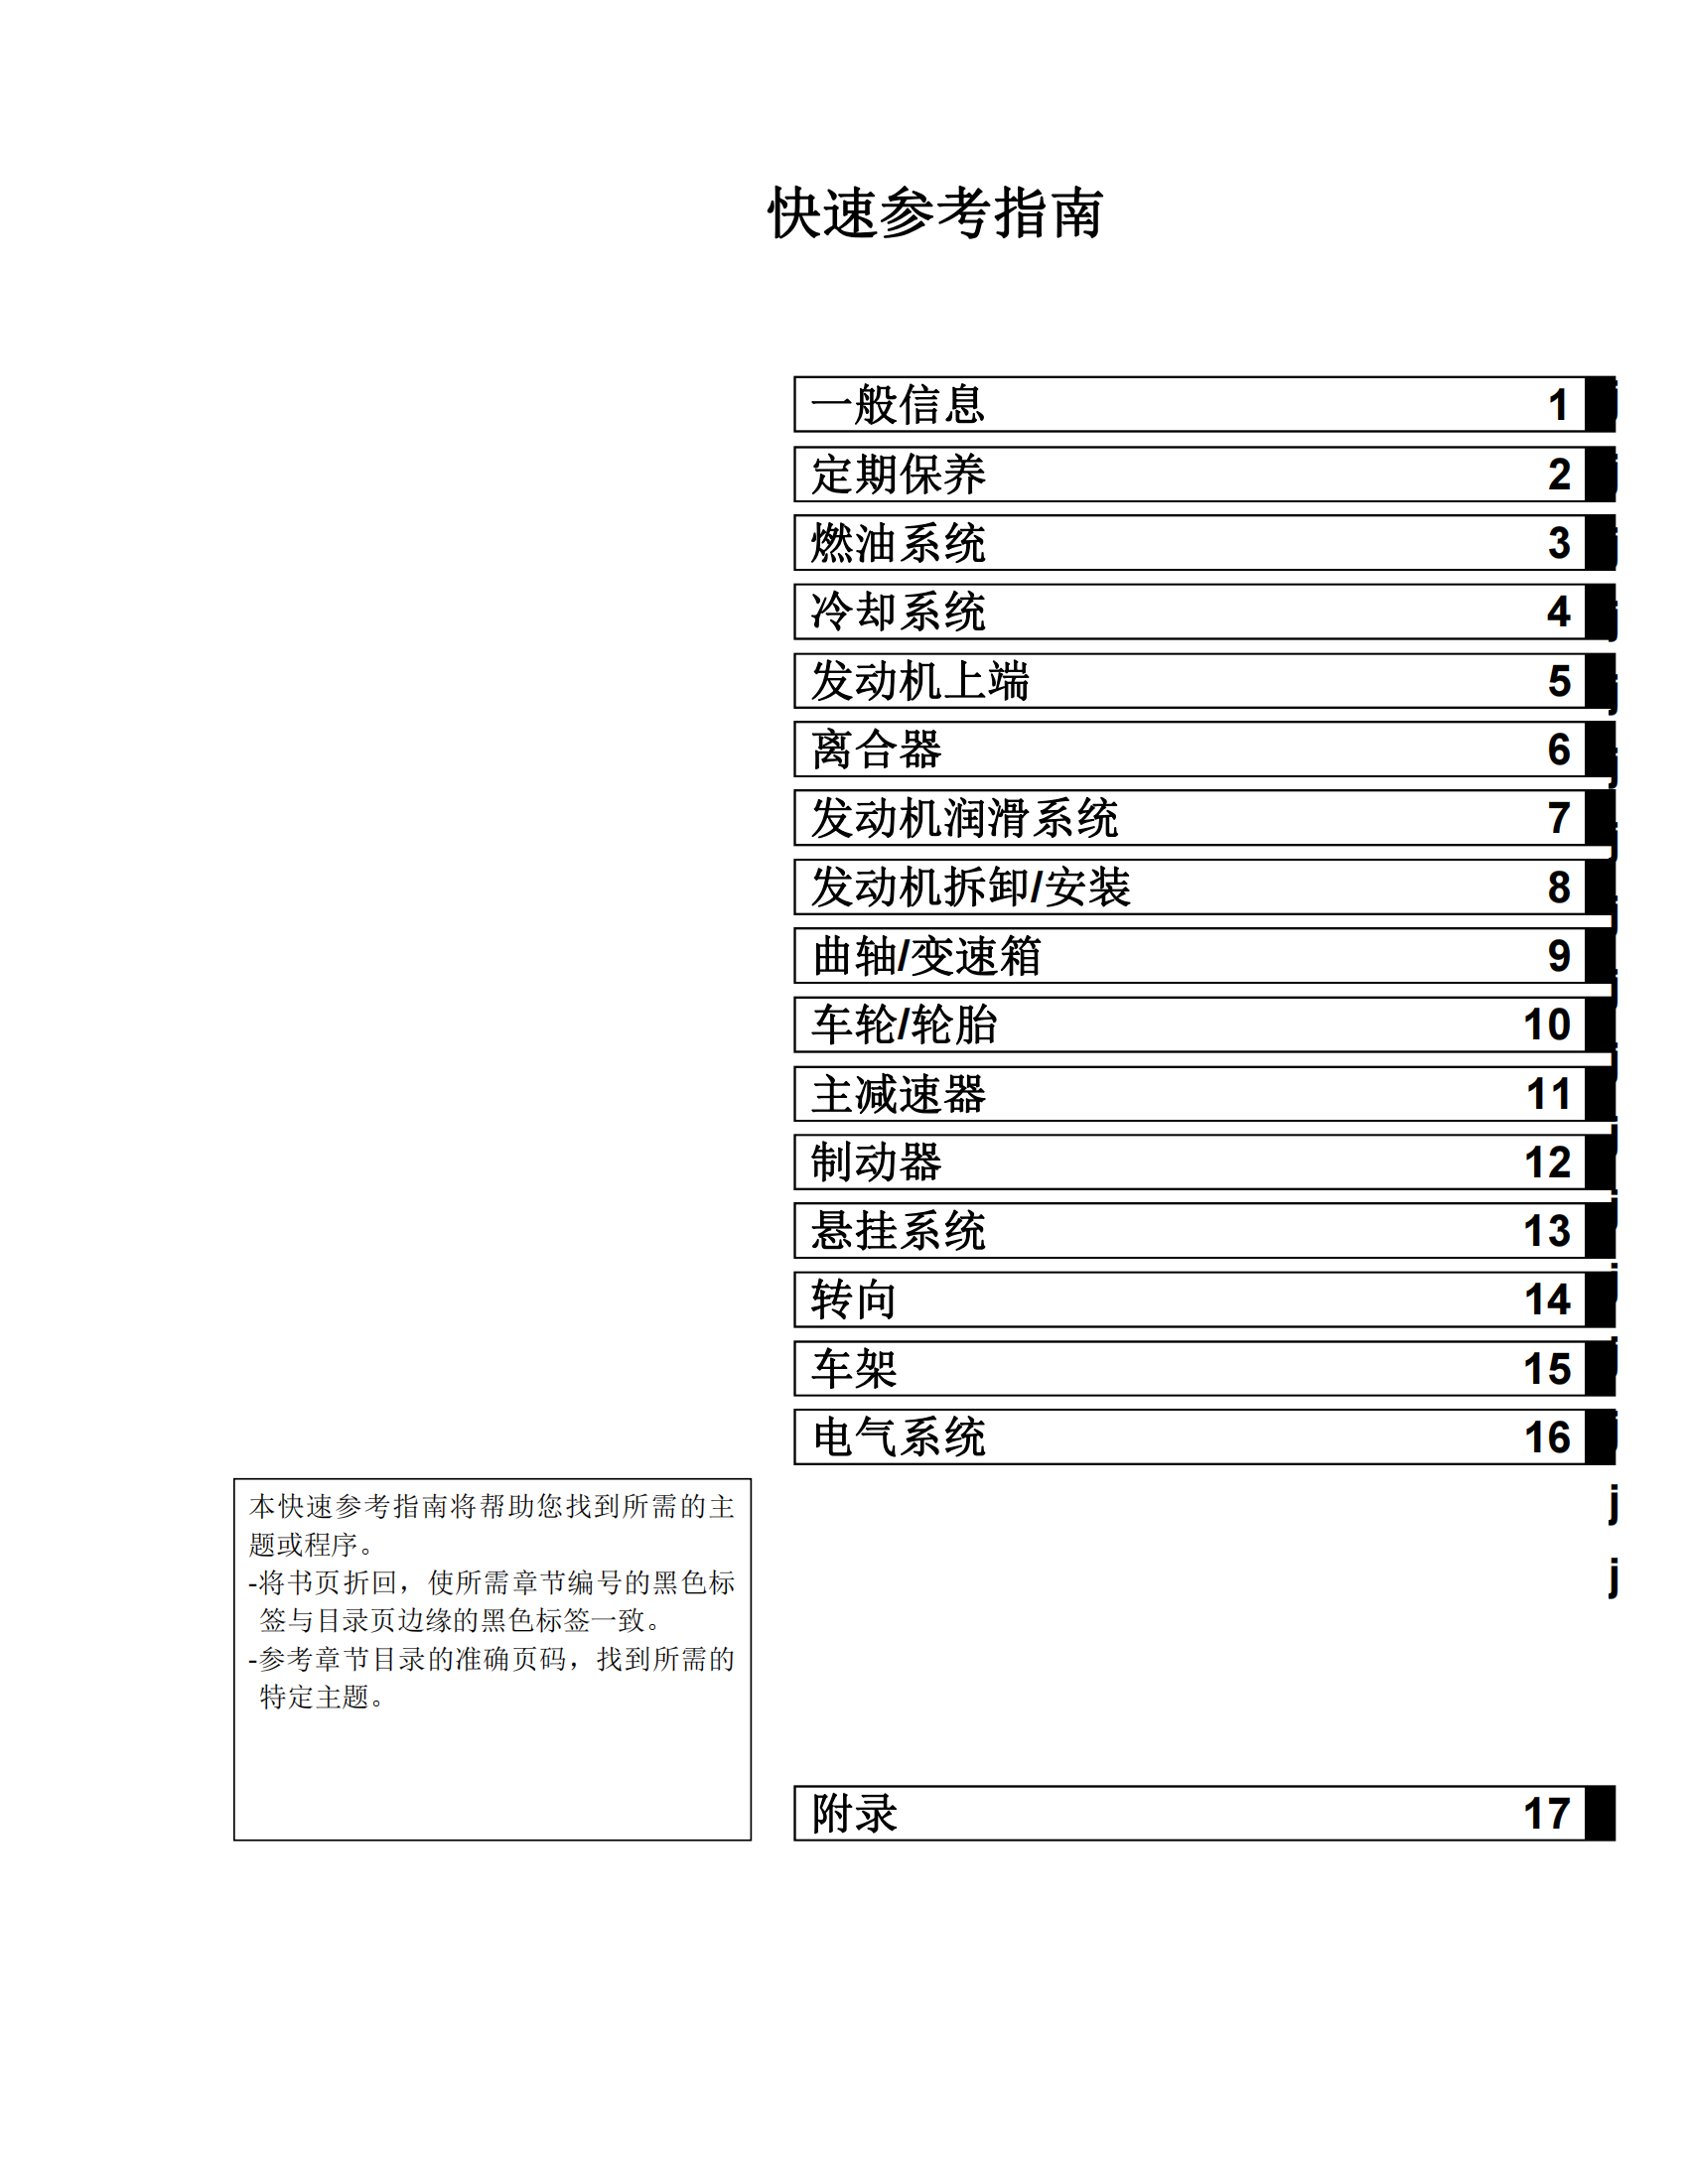 简体中文2009-2010年川崎kx250f维修手册 kawasaki kx250f维修手册插图1